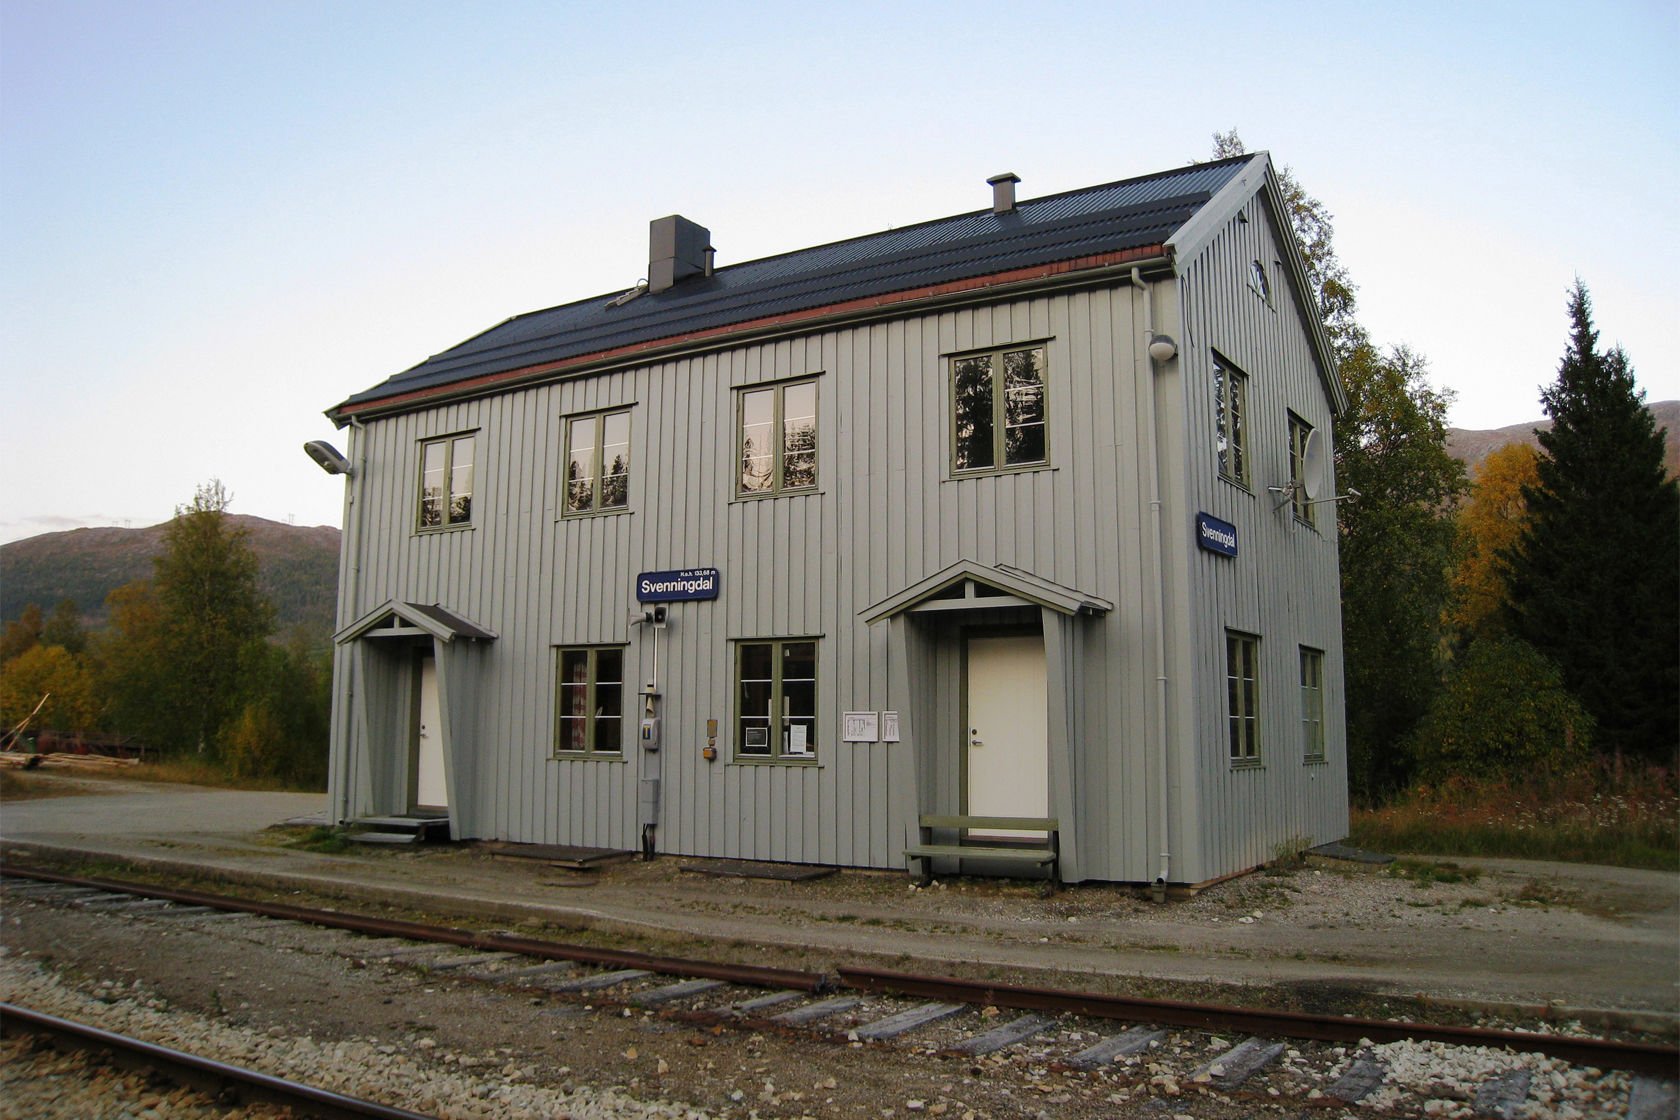 The station building at Svenningdal station